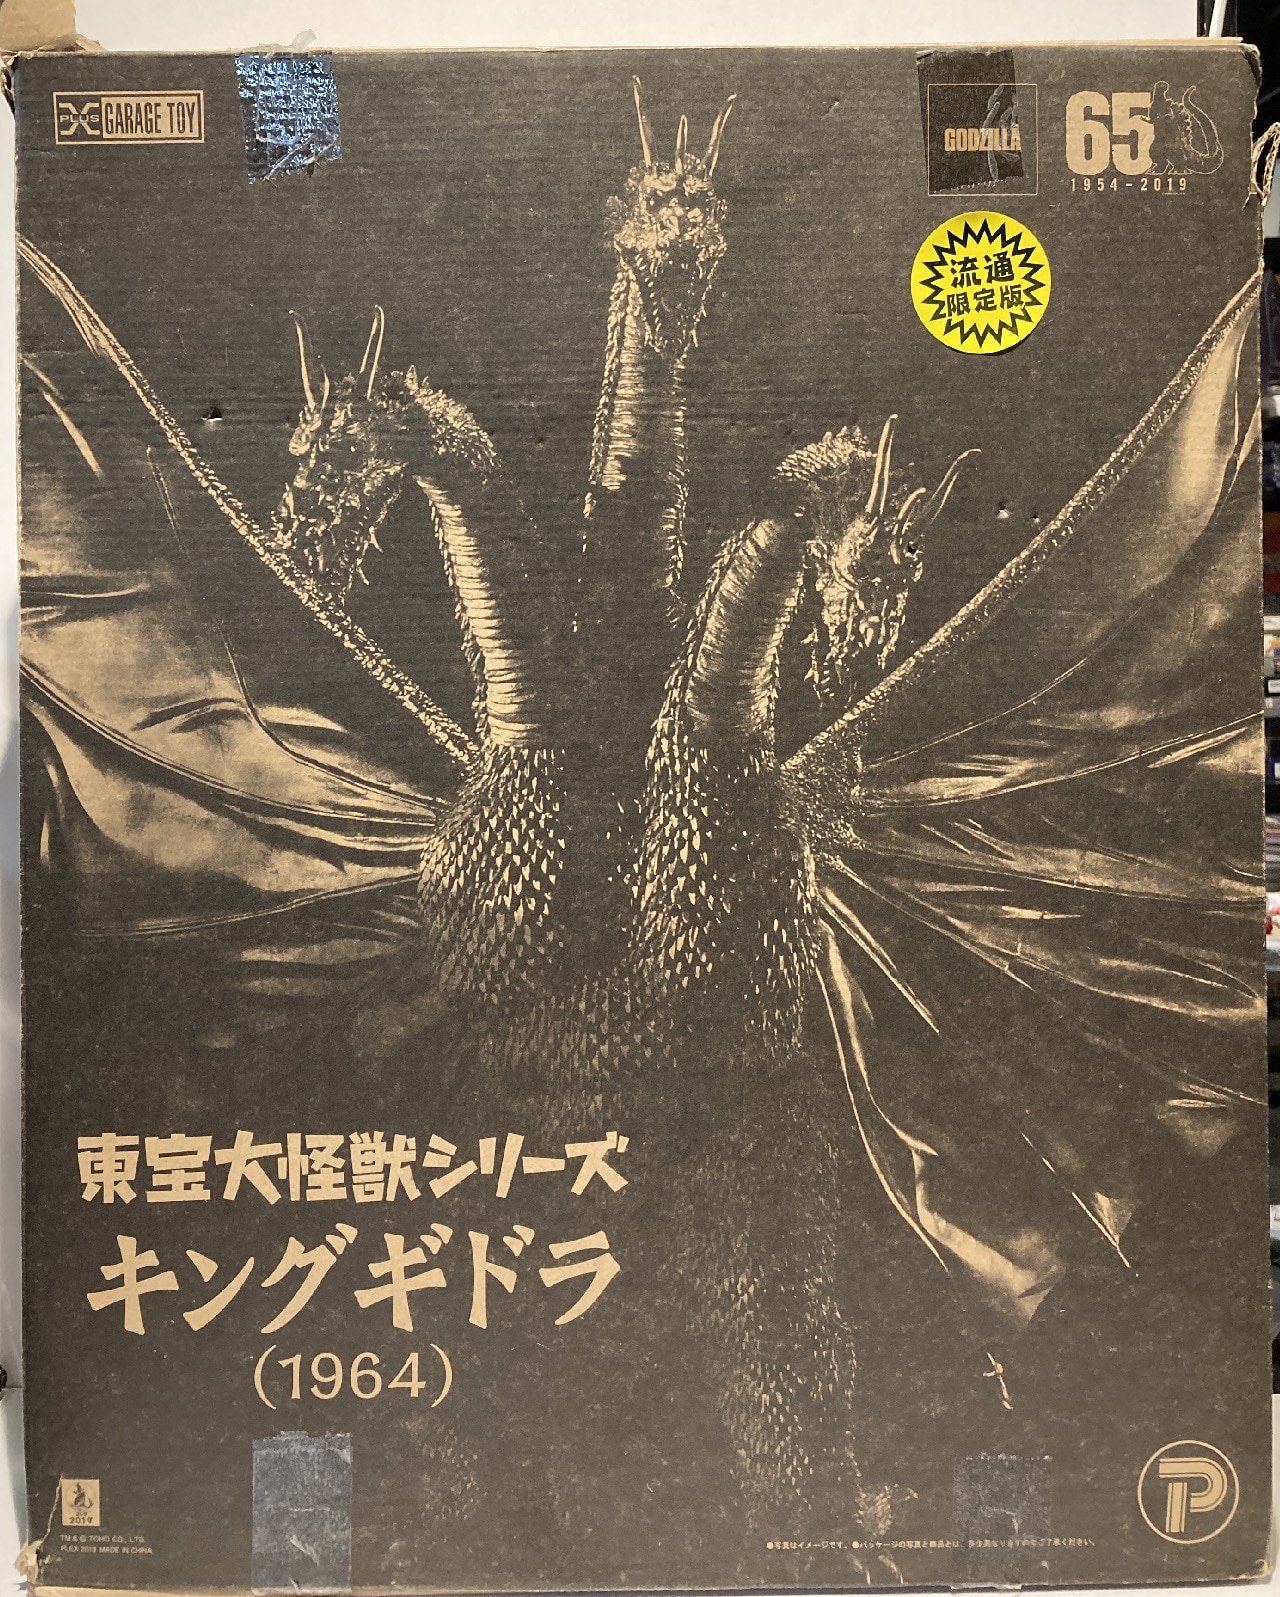 東宝大怪獣シリーズ キングギドラ (1964) 流通限定版 送料無料